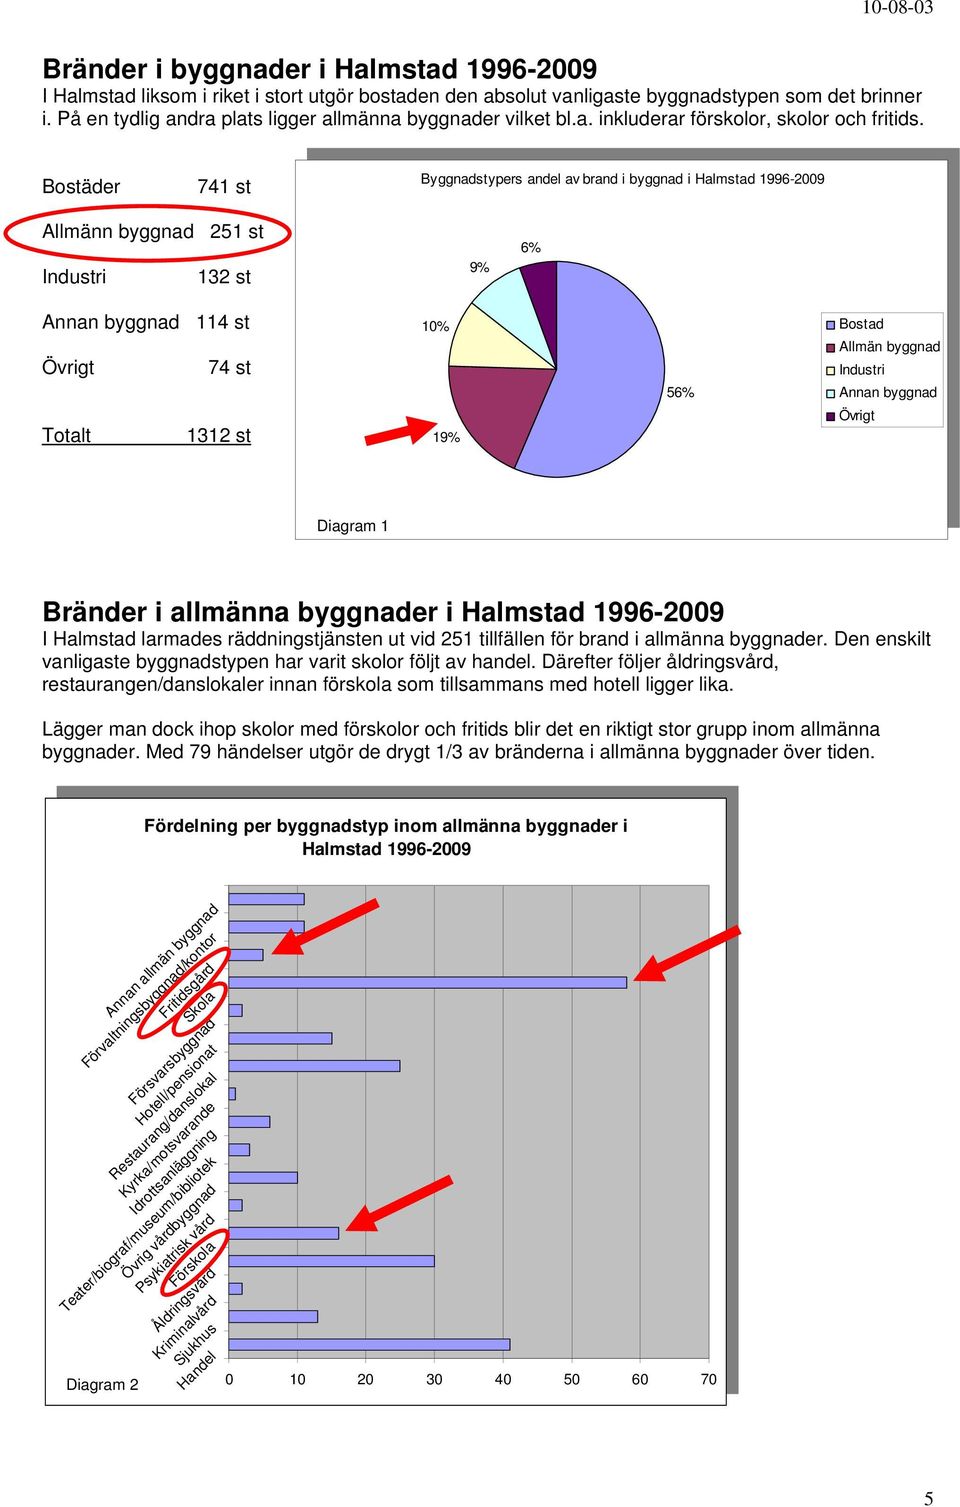 Bostäder 741 st Byggnadstypers andel av i byggnad i Halmstad 1996-29 Byggnadstypers andel av i byggnad i Halmstad 1996-29 Allmänn byggnad 251 st Industri 132 st 9% 9% 6% 6% Annan byggnad 114 st